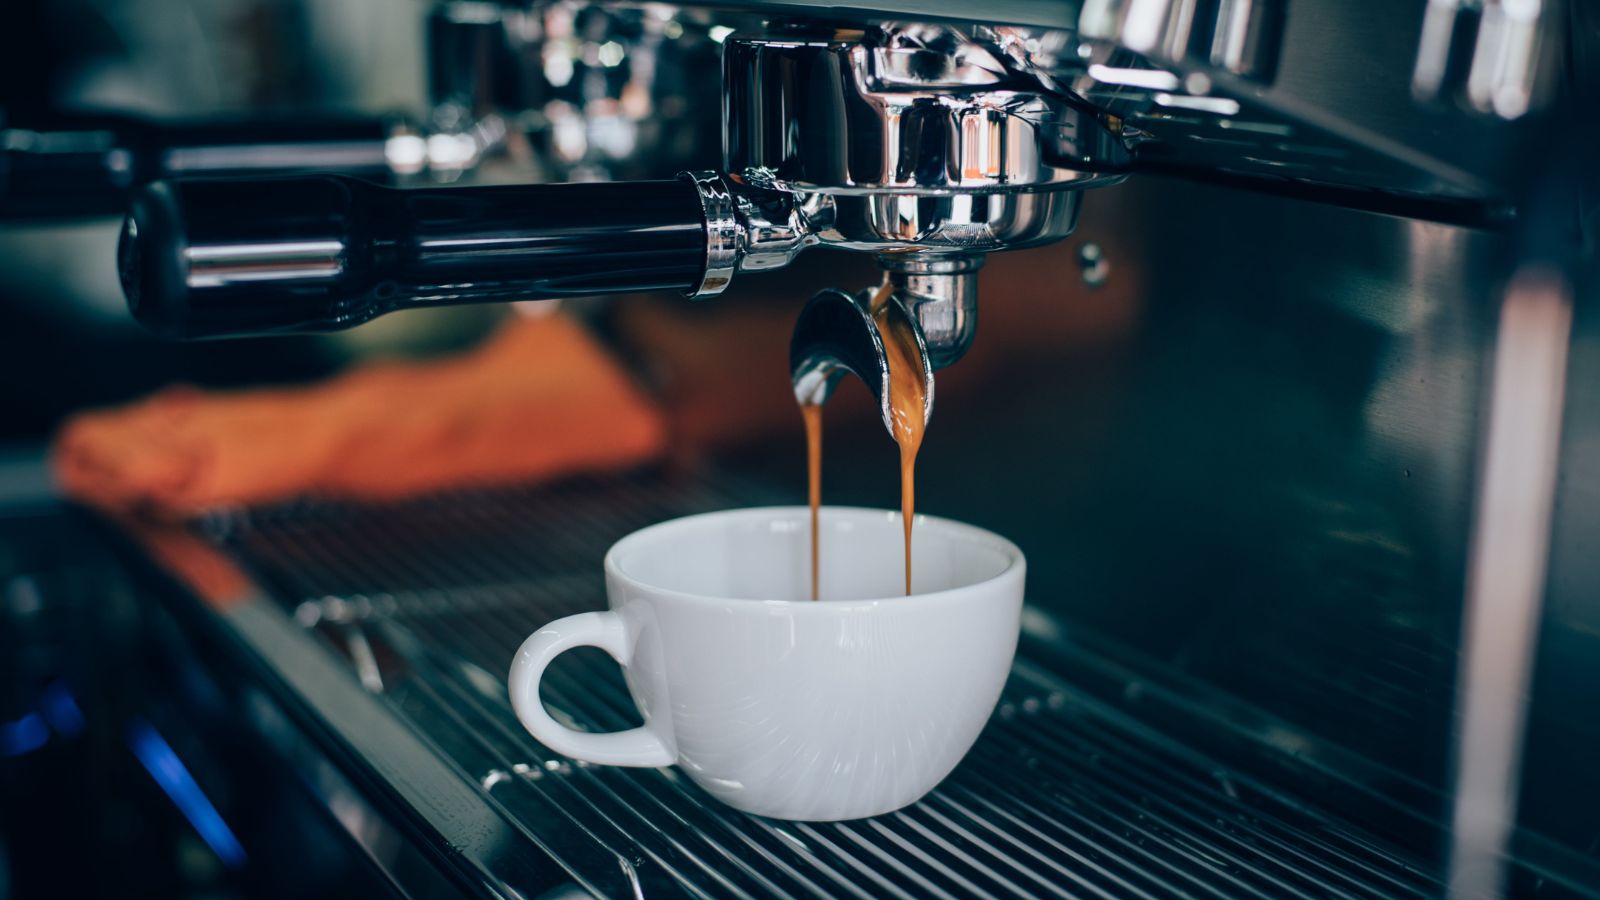 Espresso shots and caffeine content